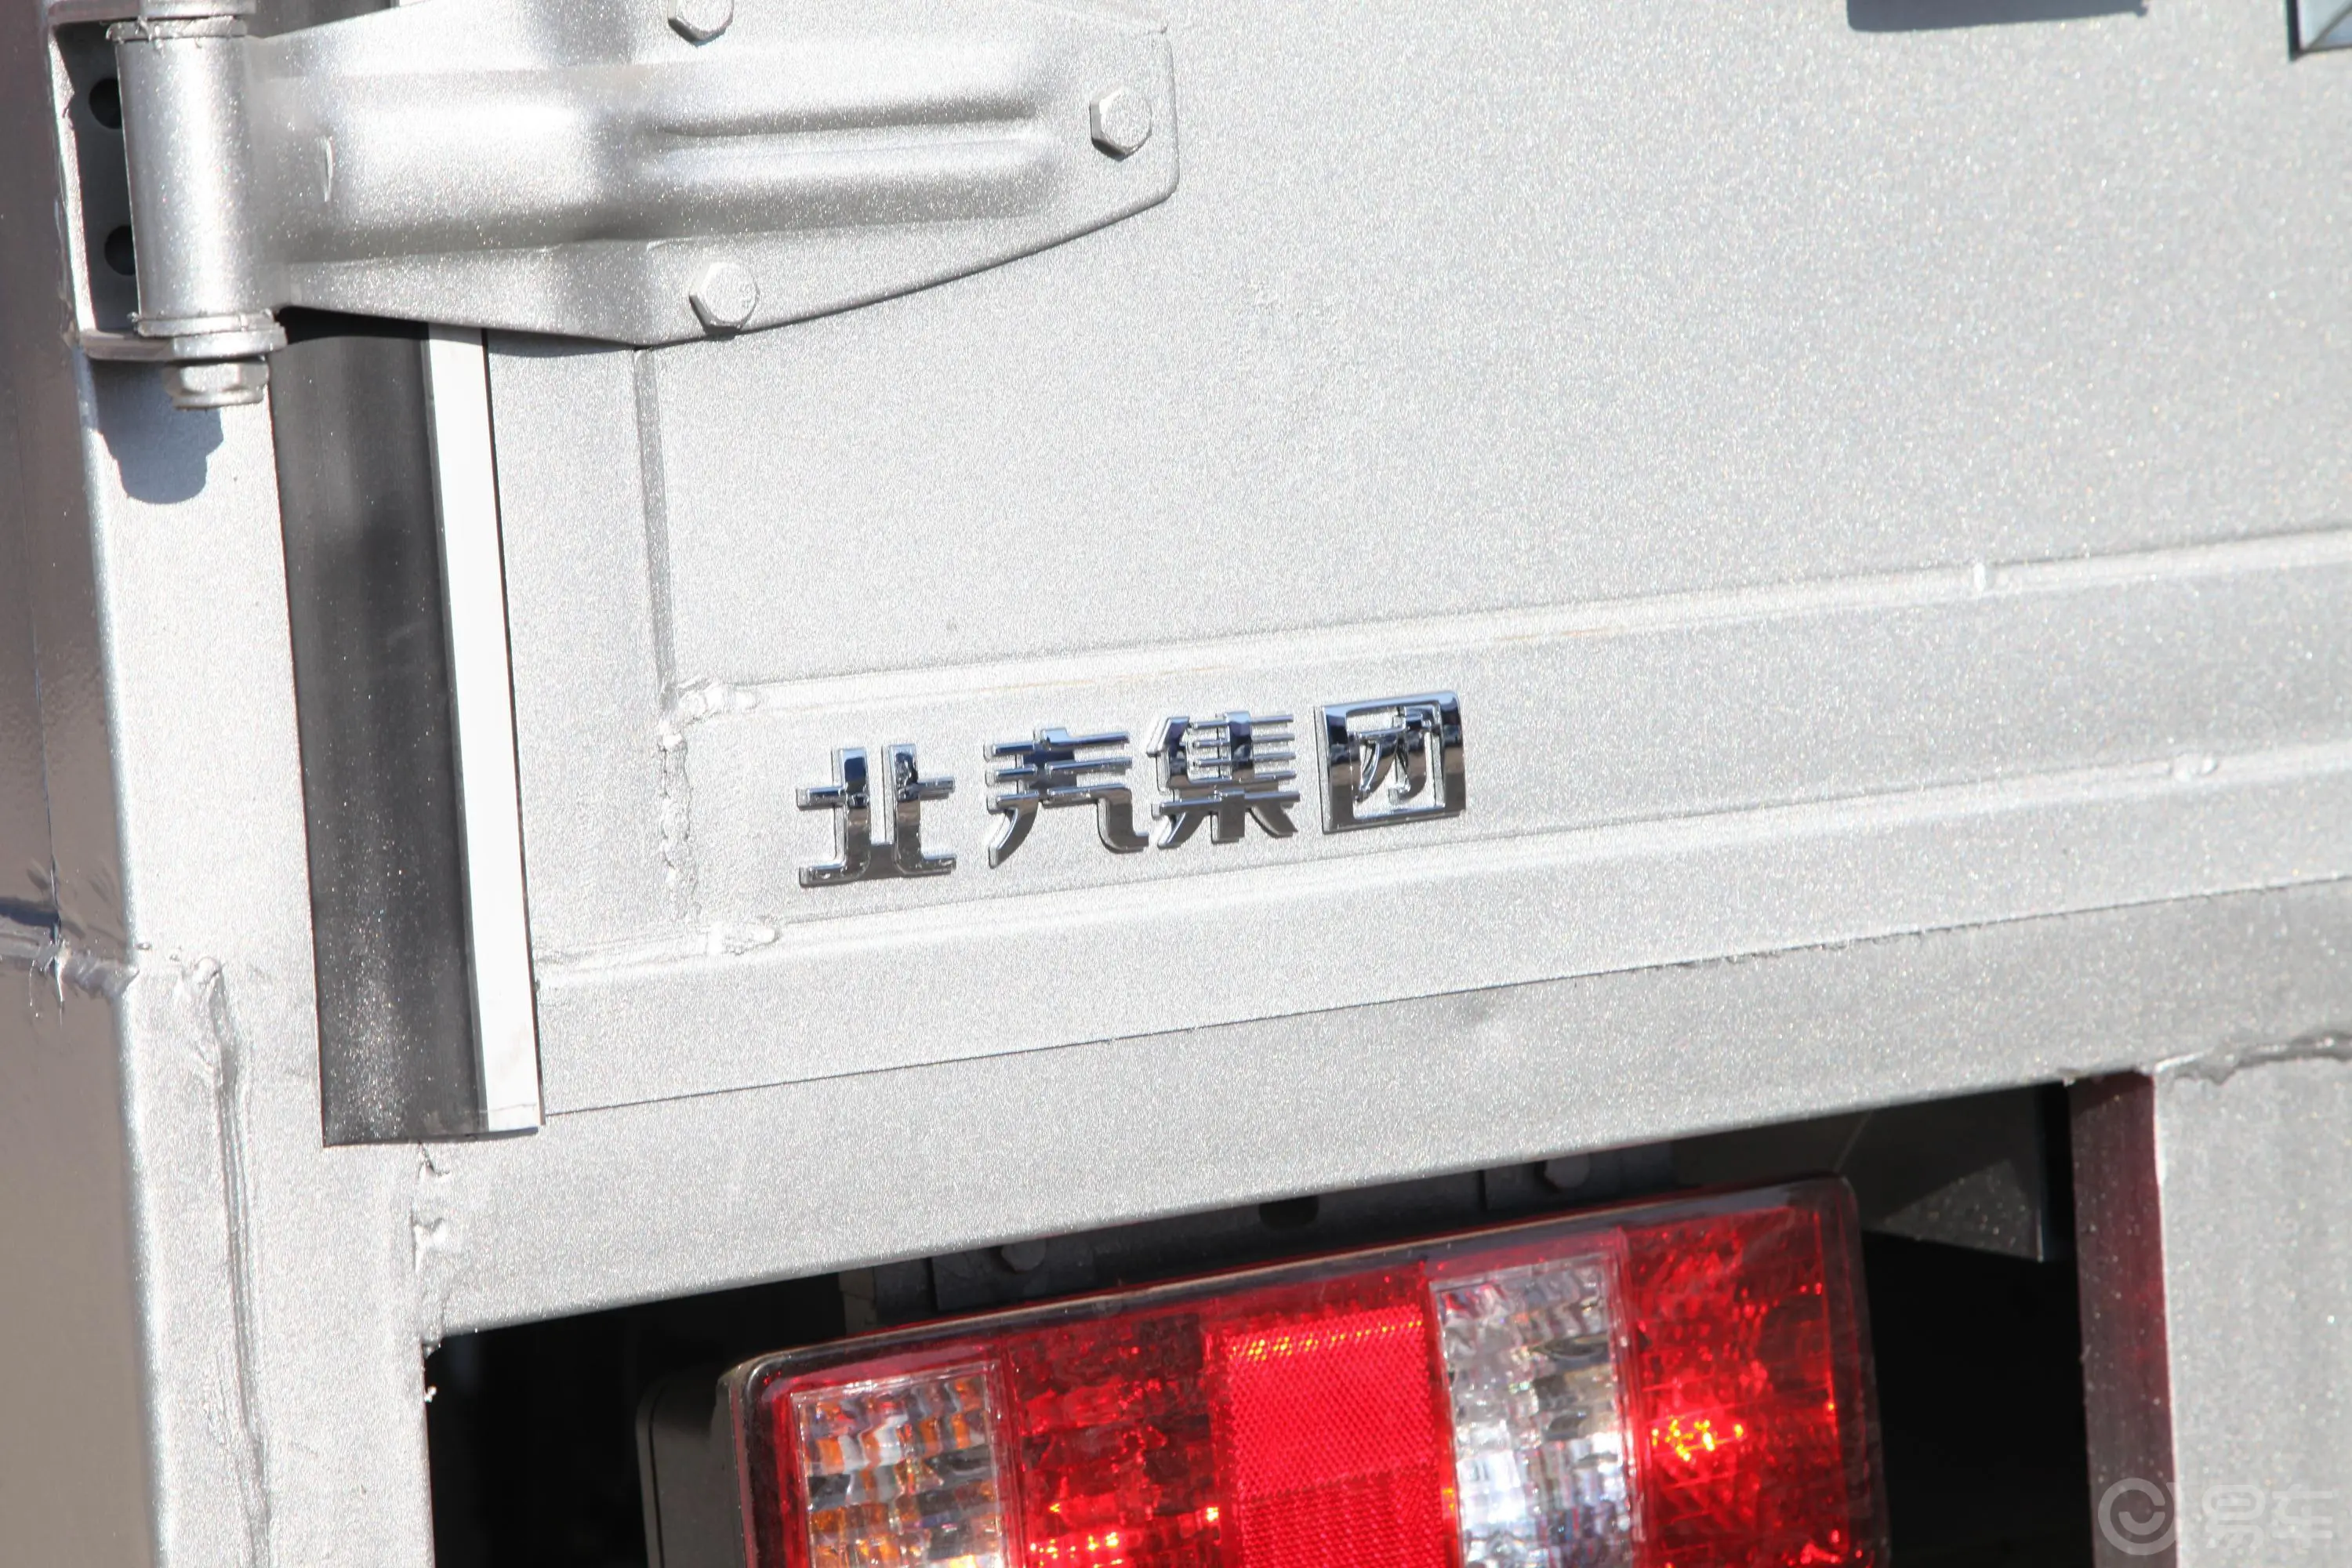 福瑞达K21轻卡 1.5L 手动 单排厢货 标准型外观